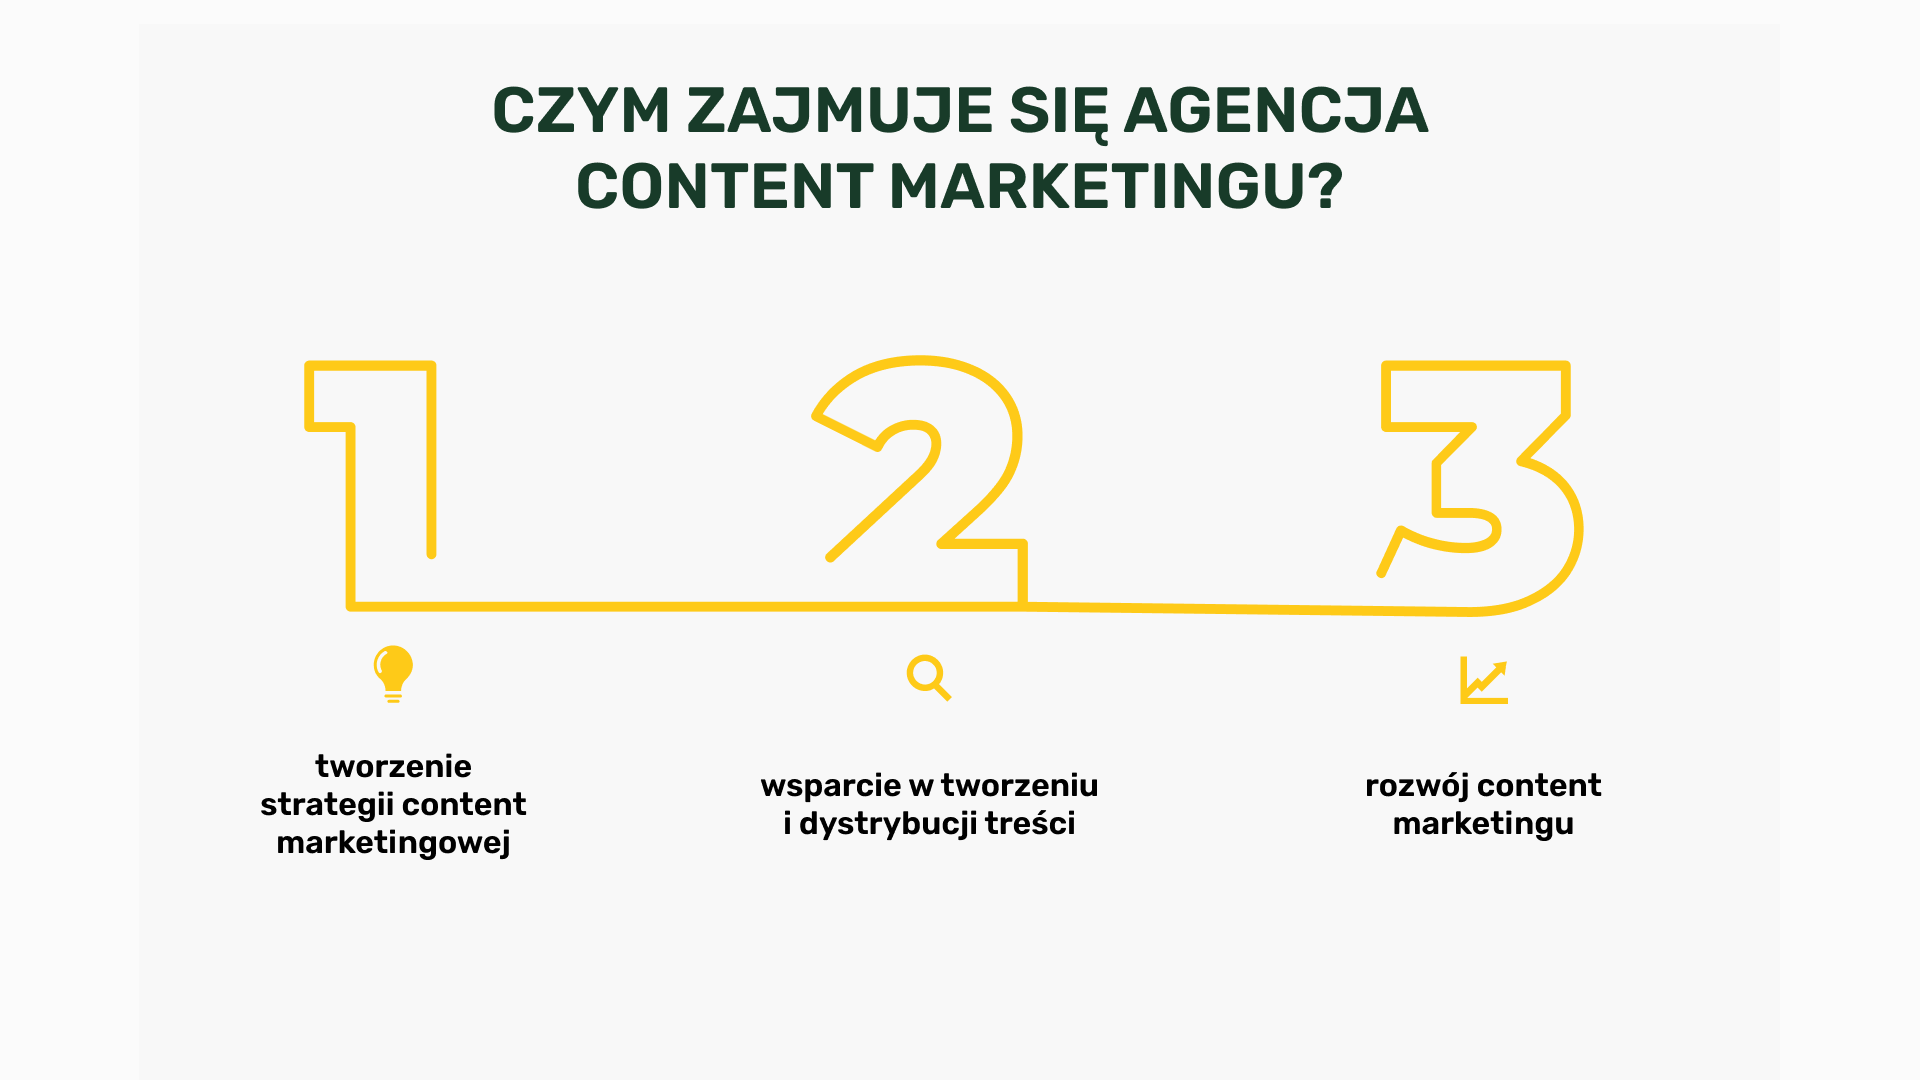 Czym zajmuje się agencja content marketingu?